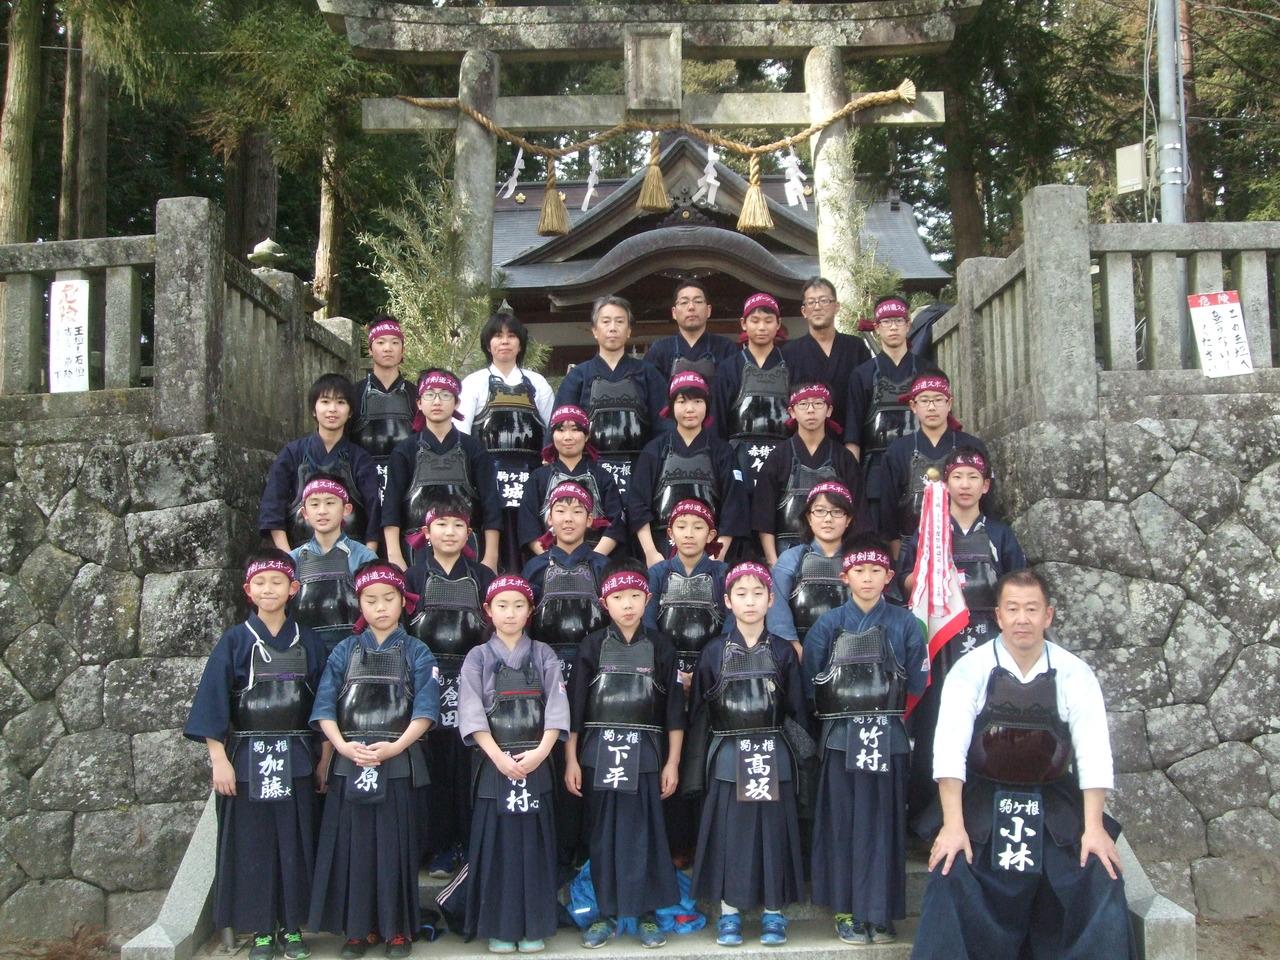 剣道団の活動風景の写真